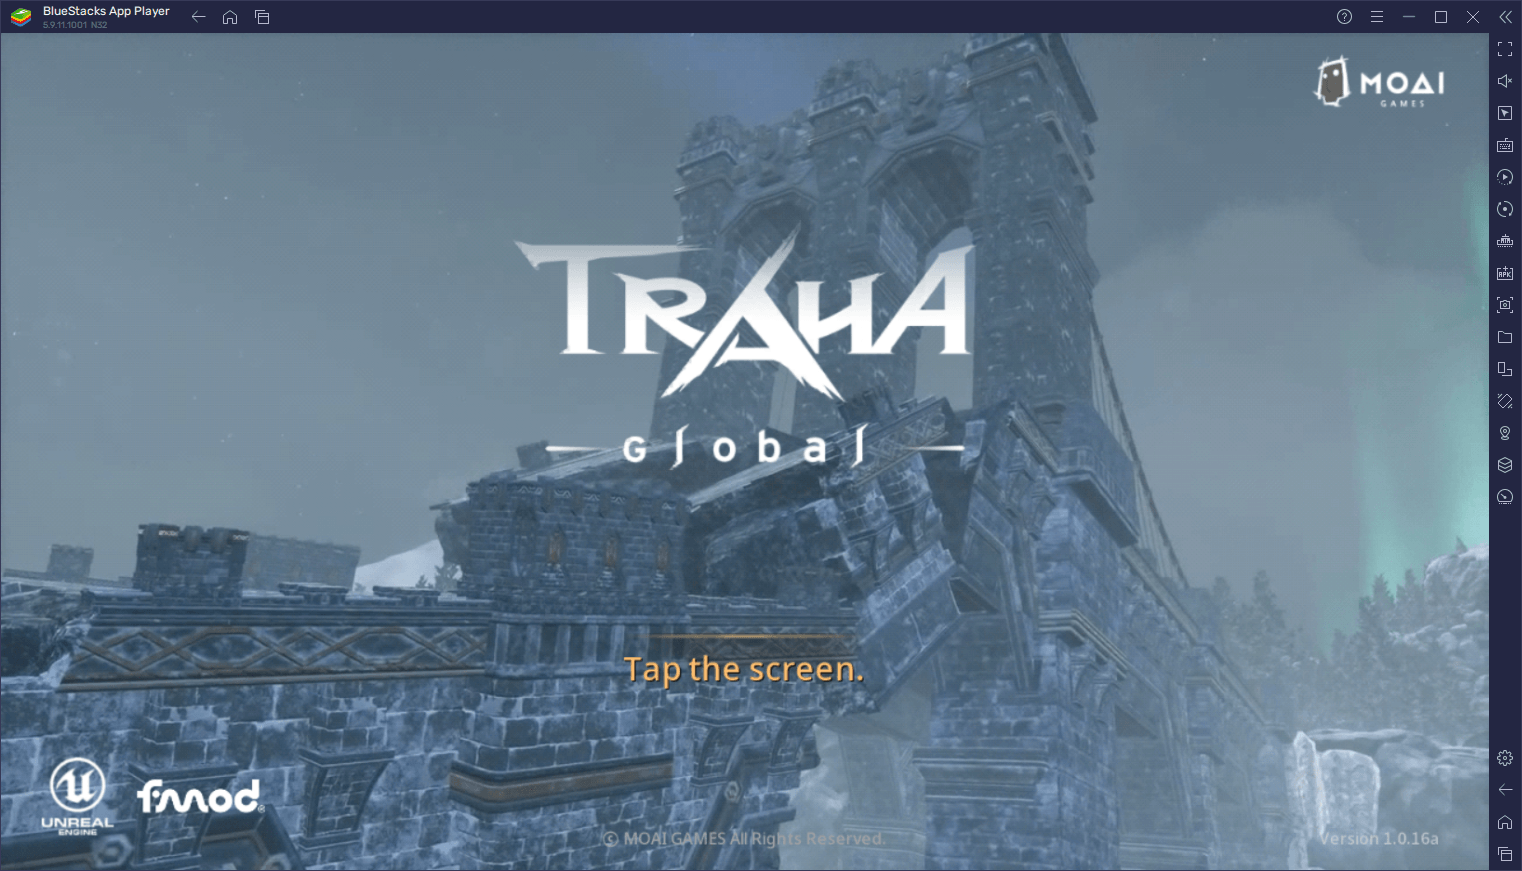 Einsteiger-Tipps und -Tricks für TRAHA Global - Beginne deine Reise auf dem richtigen Weg